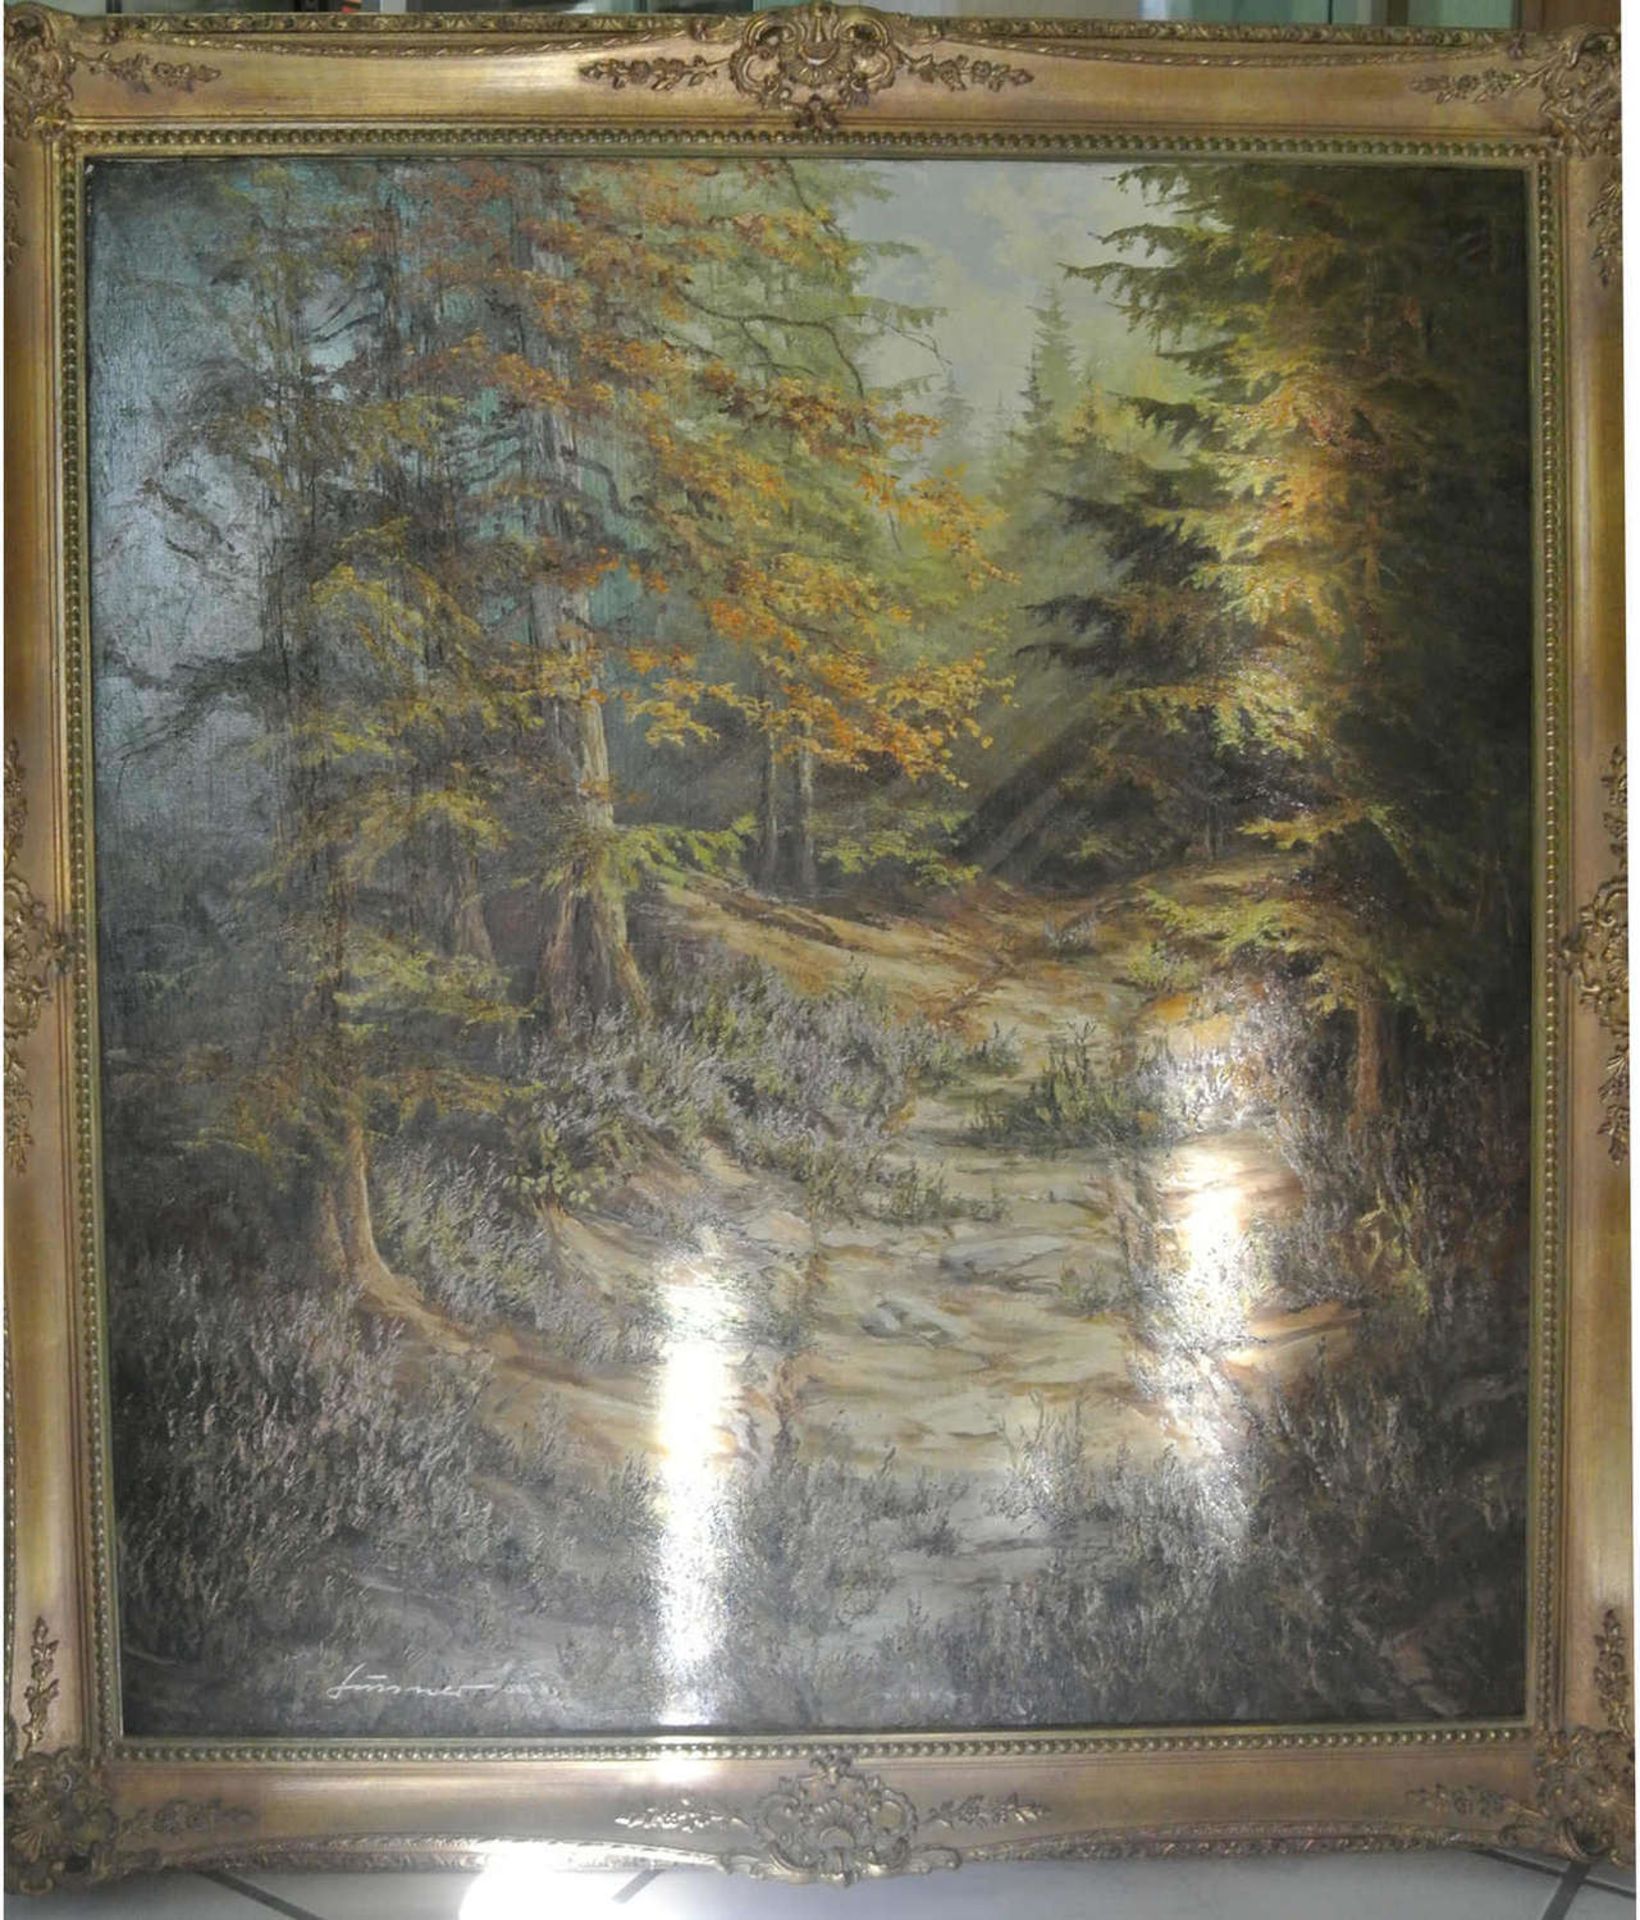 Süssner, Ölgemälde auf Leinwand "Sonnige Waldlandschaft im Herbst", signierte links unten "Süssner",